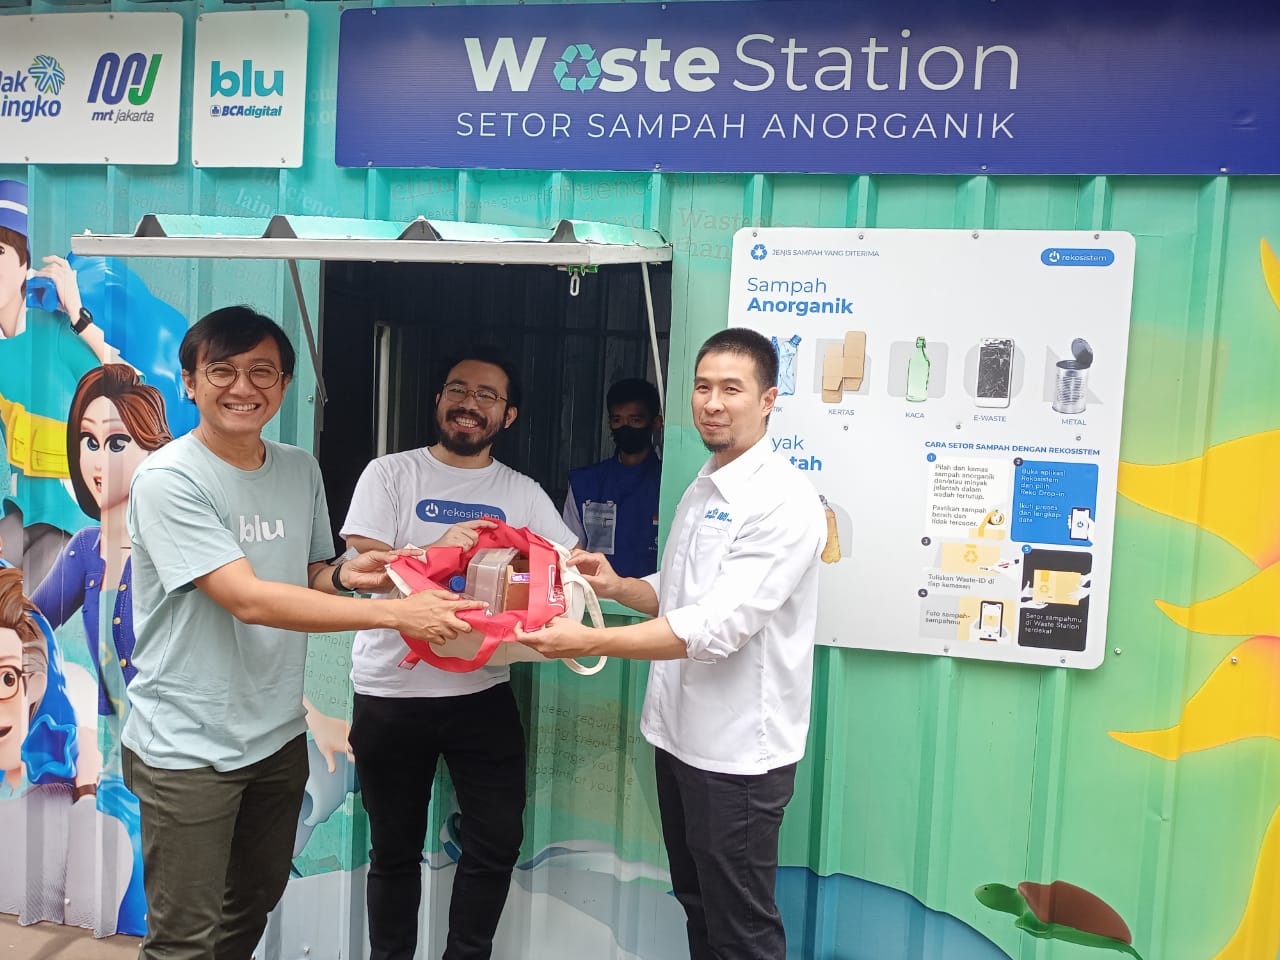 blu by BCA, Rekosistem dan MRT Jakarta, Ajak Masyarakat Setor Sampah di Waste Station